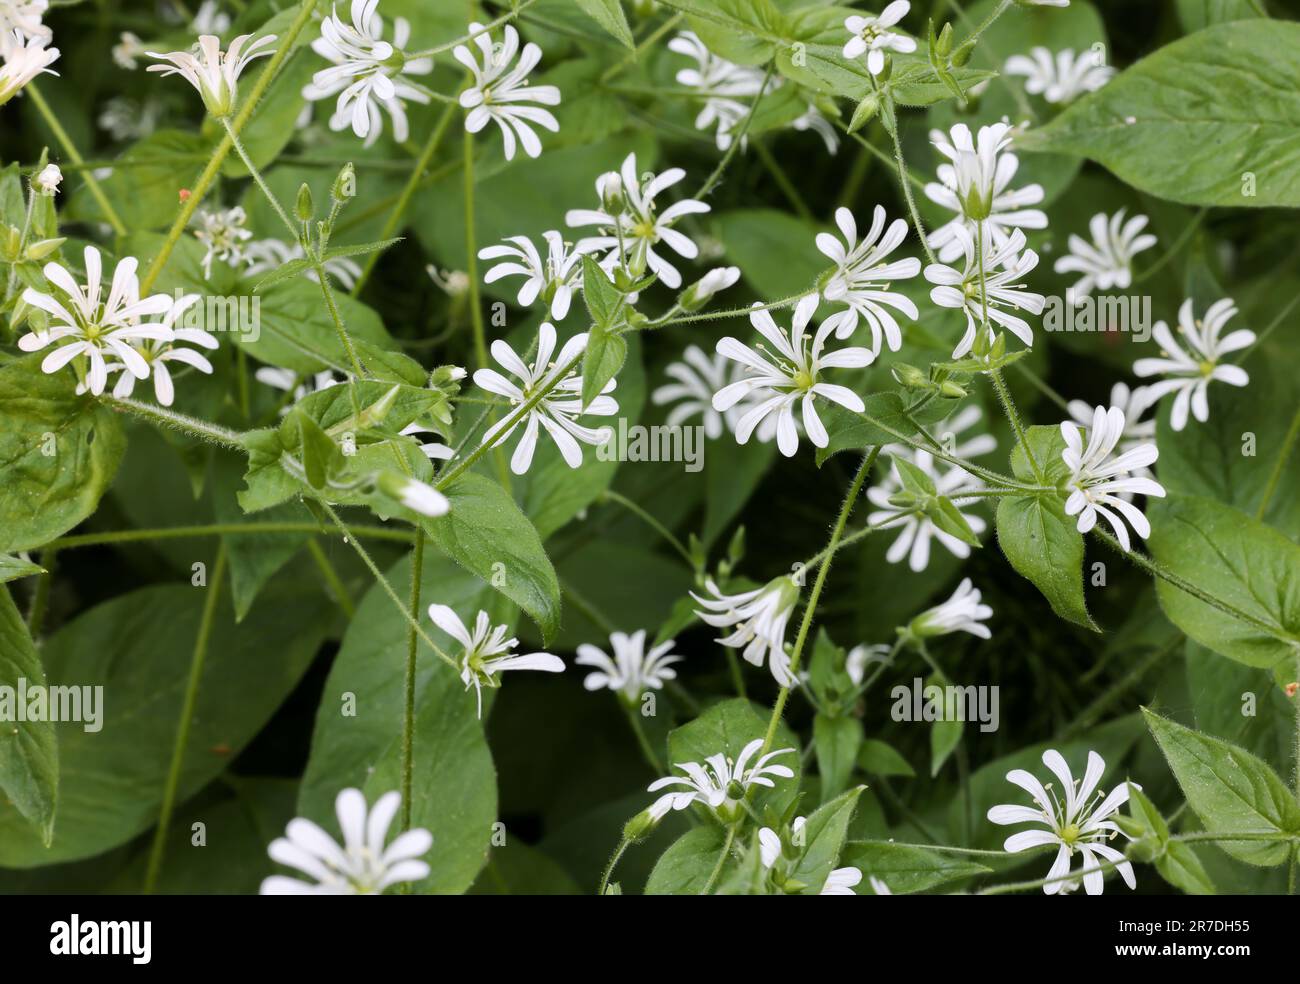 Starwort flowering Stock Photo